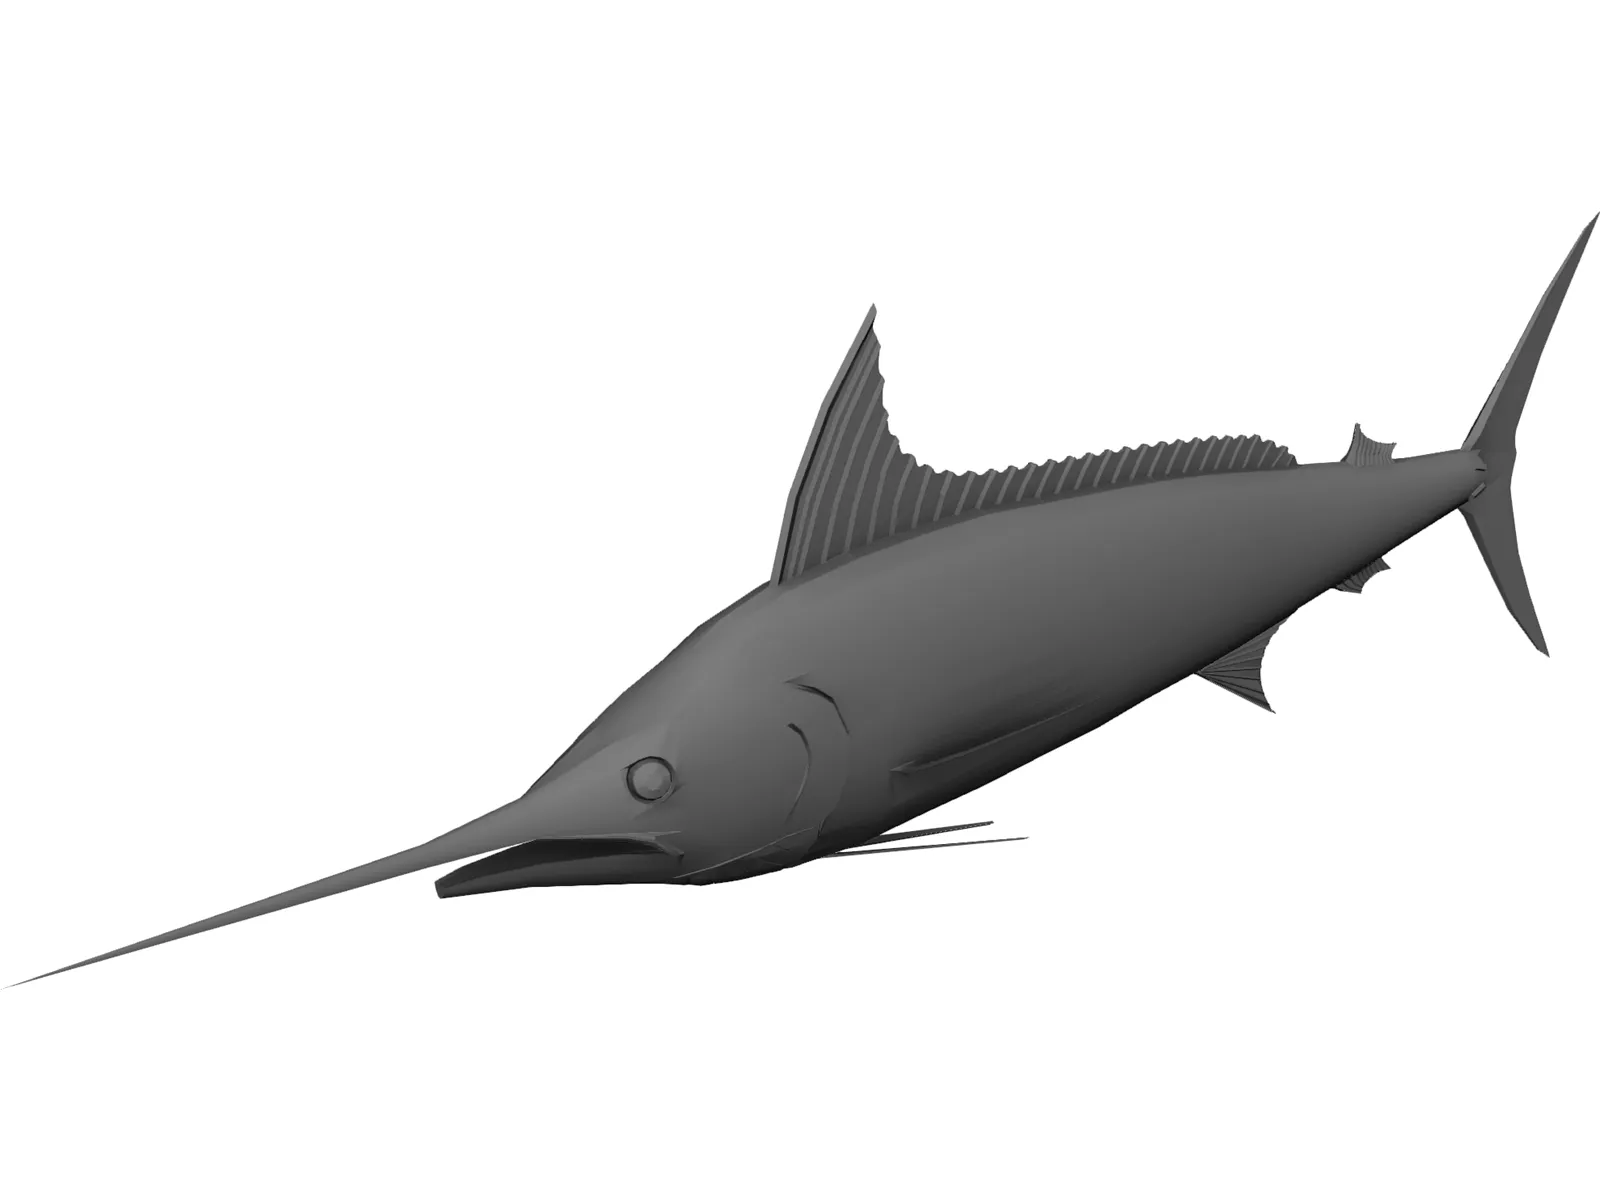 Marlin 3D Model